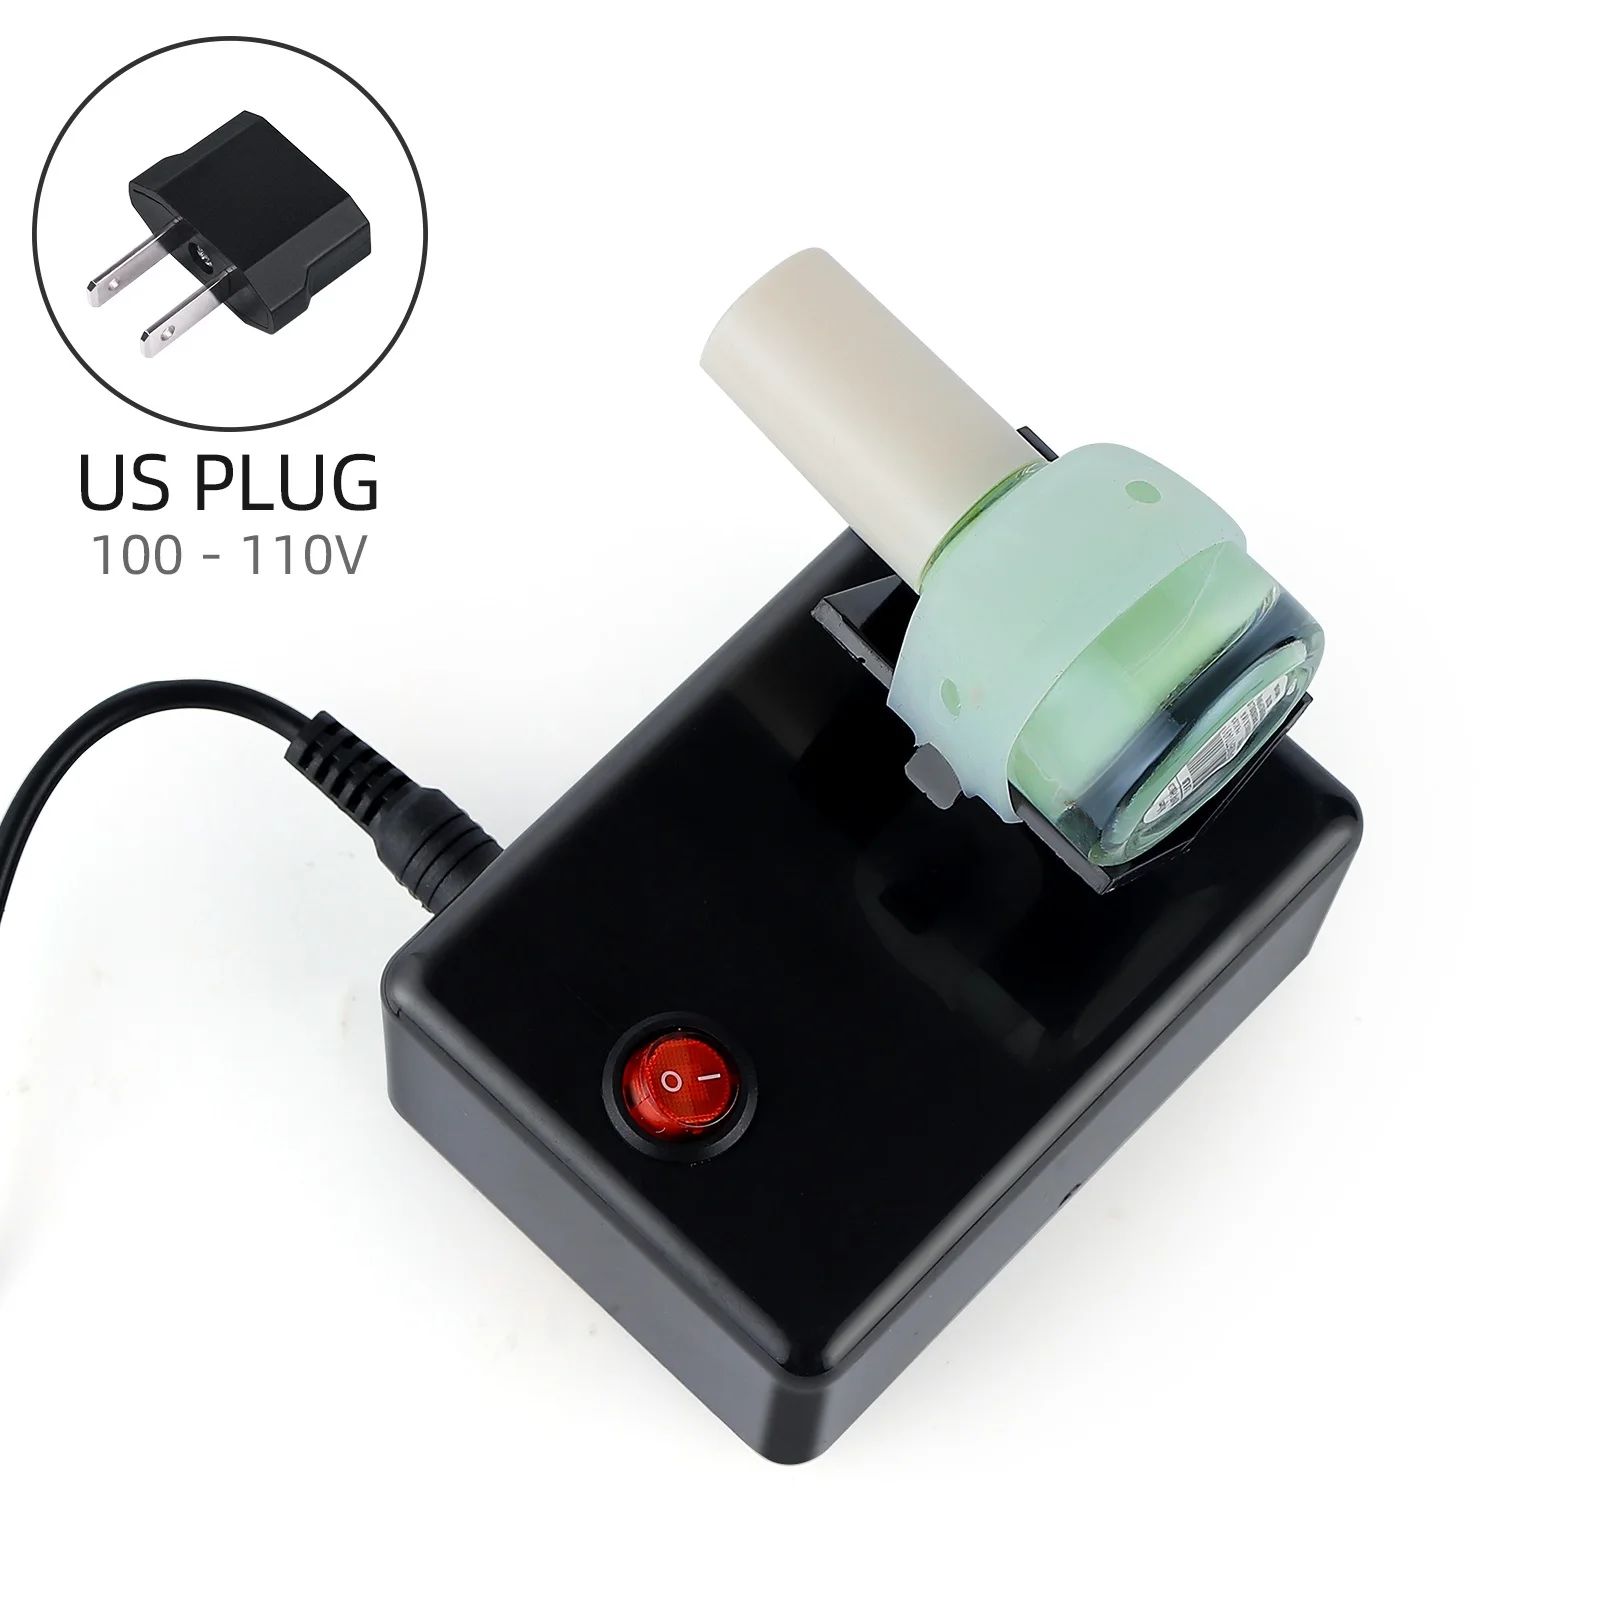 US Plug (100-110V)